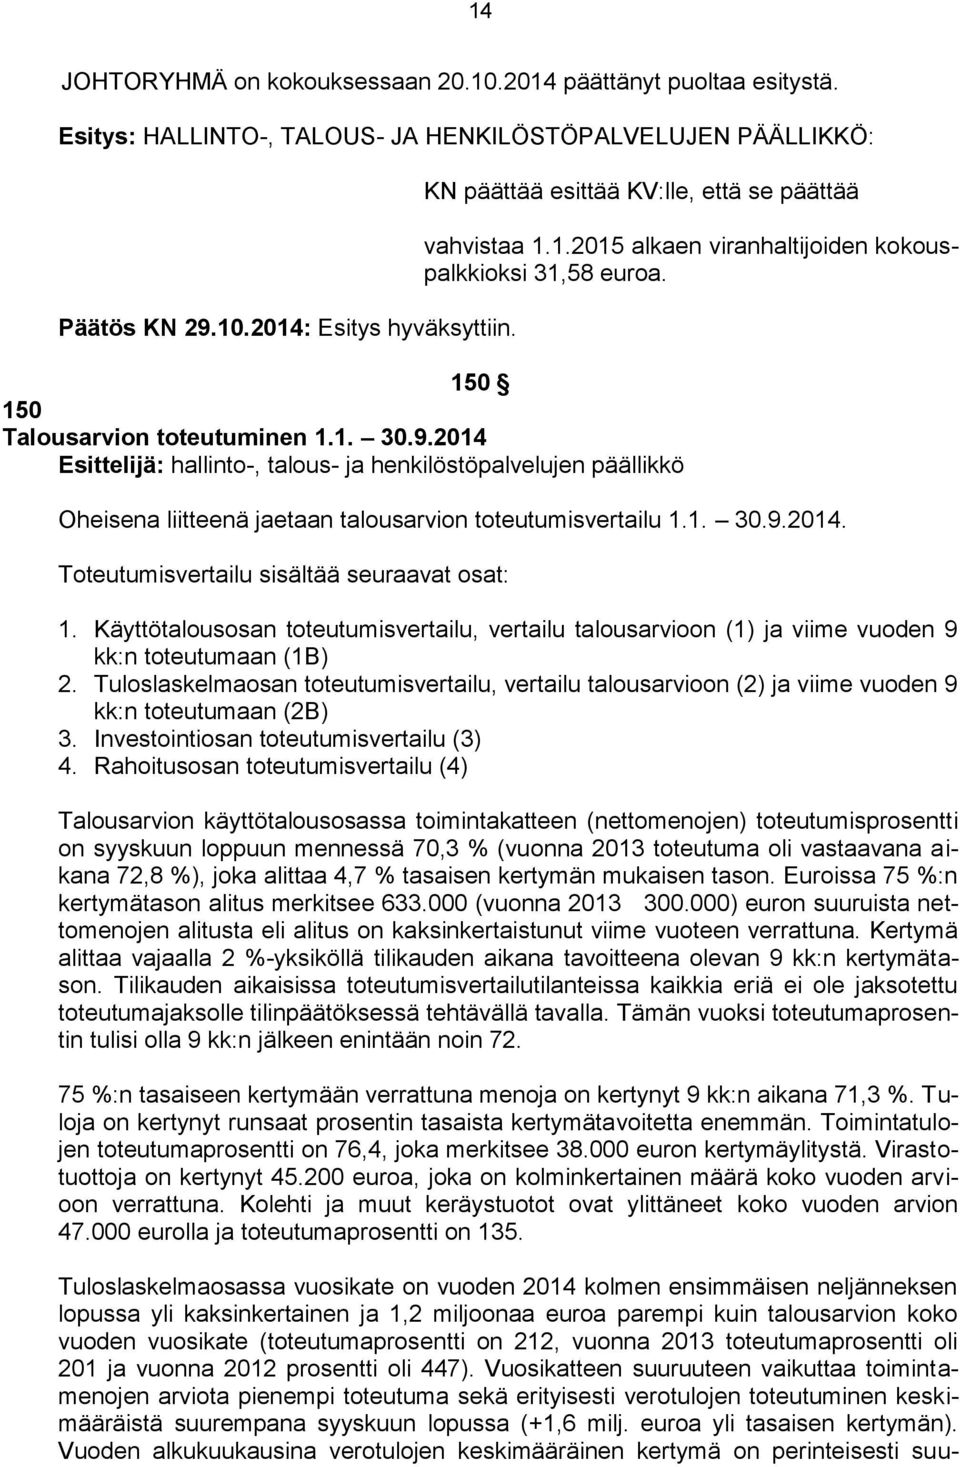 2014 Esittelijä: hallinto-, talous- ja henkilöstöpalvelujen päällikkö Oheisena liitteenä jaetaan talousarvion toteutumisvertailu 1.1. 30.9.2014. Toteutumisvertailu sisältää seuraavat osat: 1.